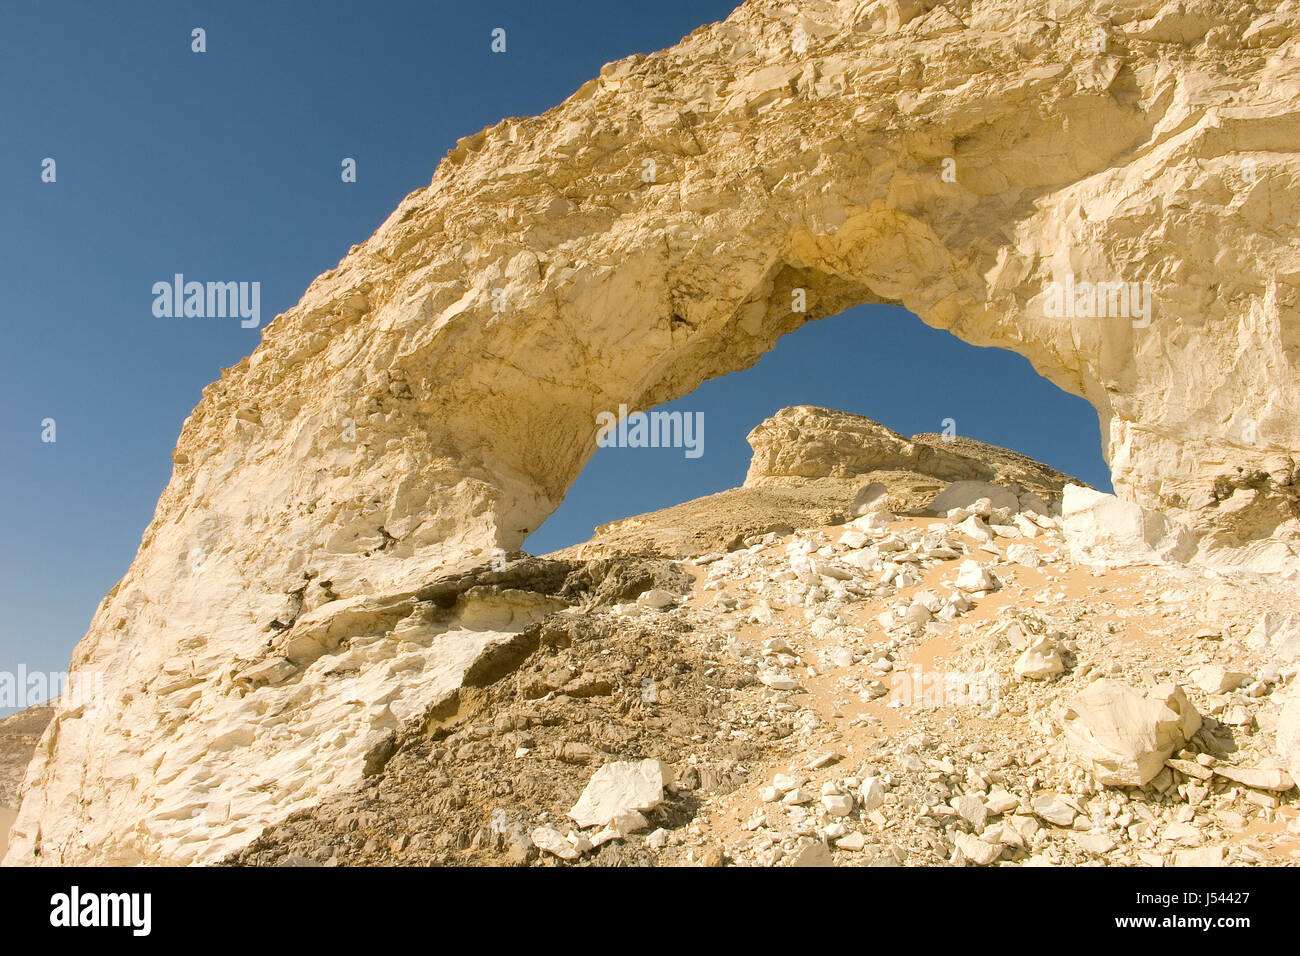 desert wasteland rock egypt chalking rock sands sand stones weisse wste gypten Stock Photo